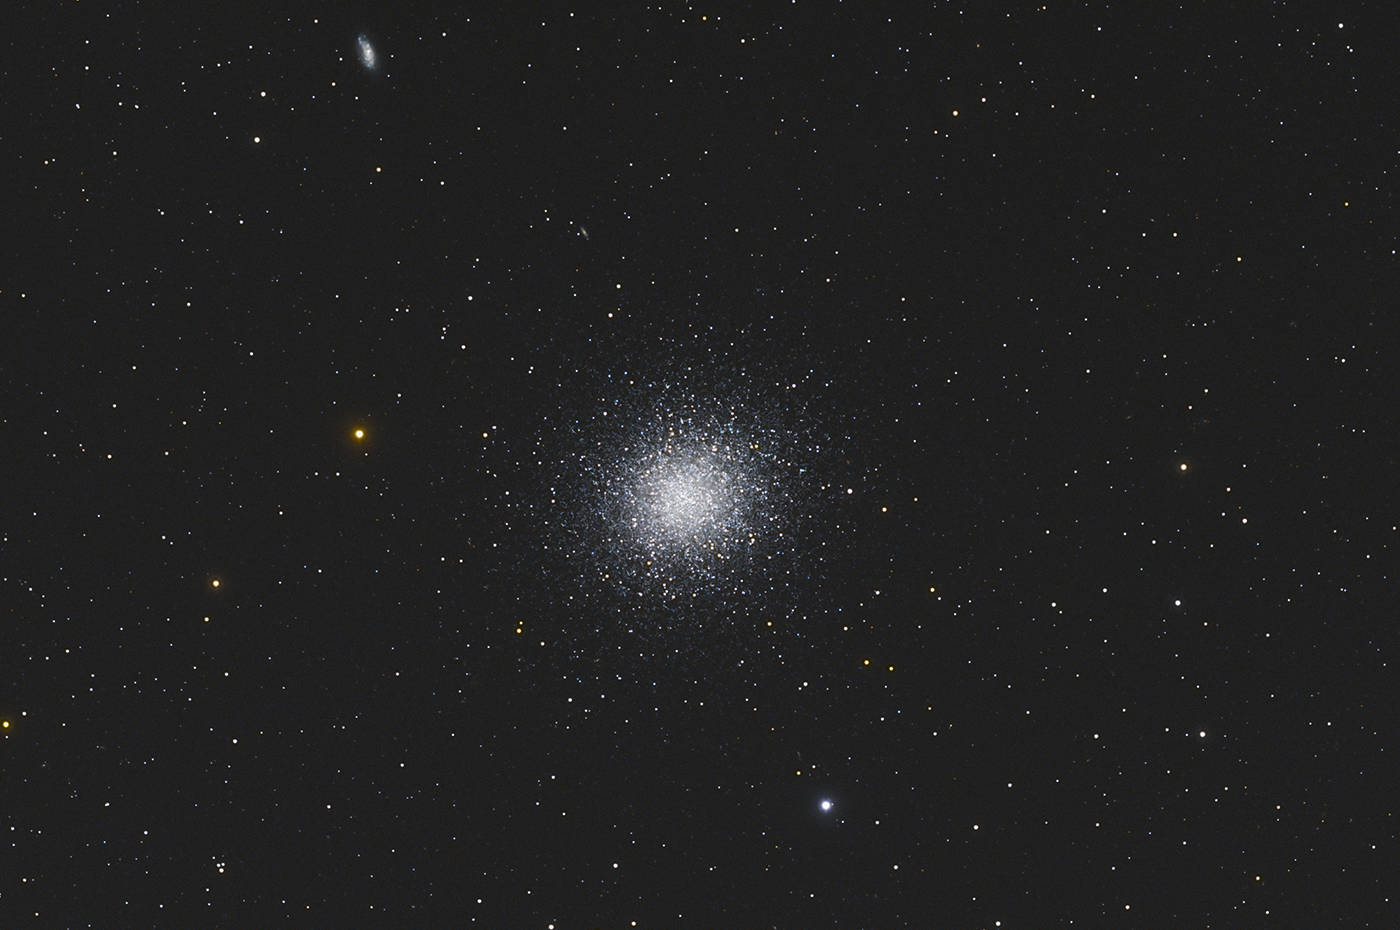 The Great Hercules Globular Cluster - M 13